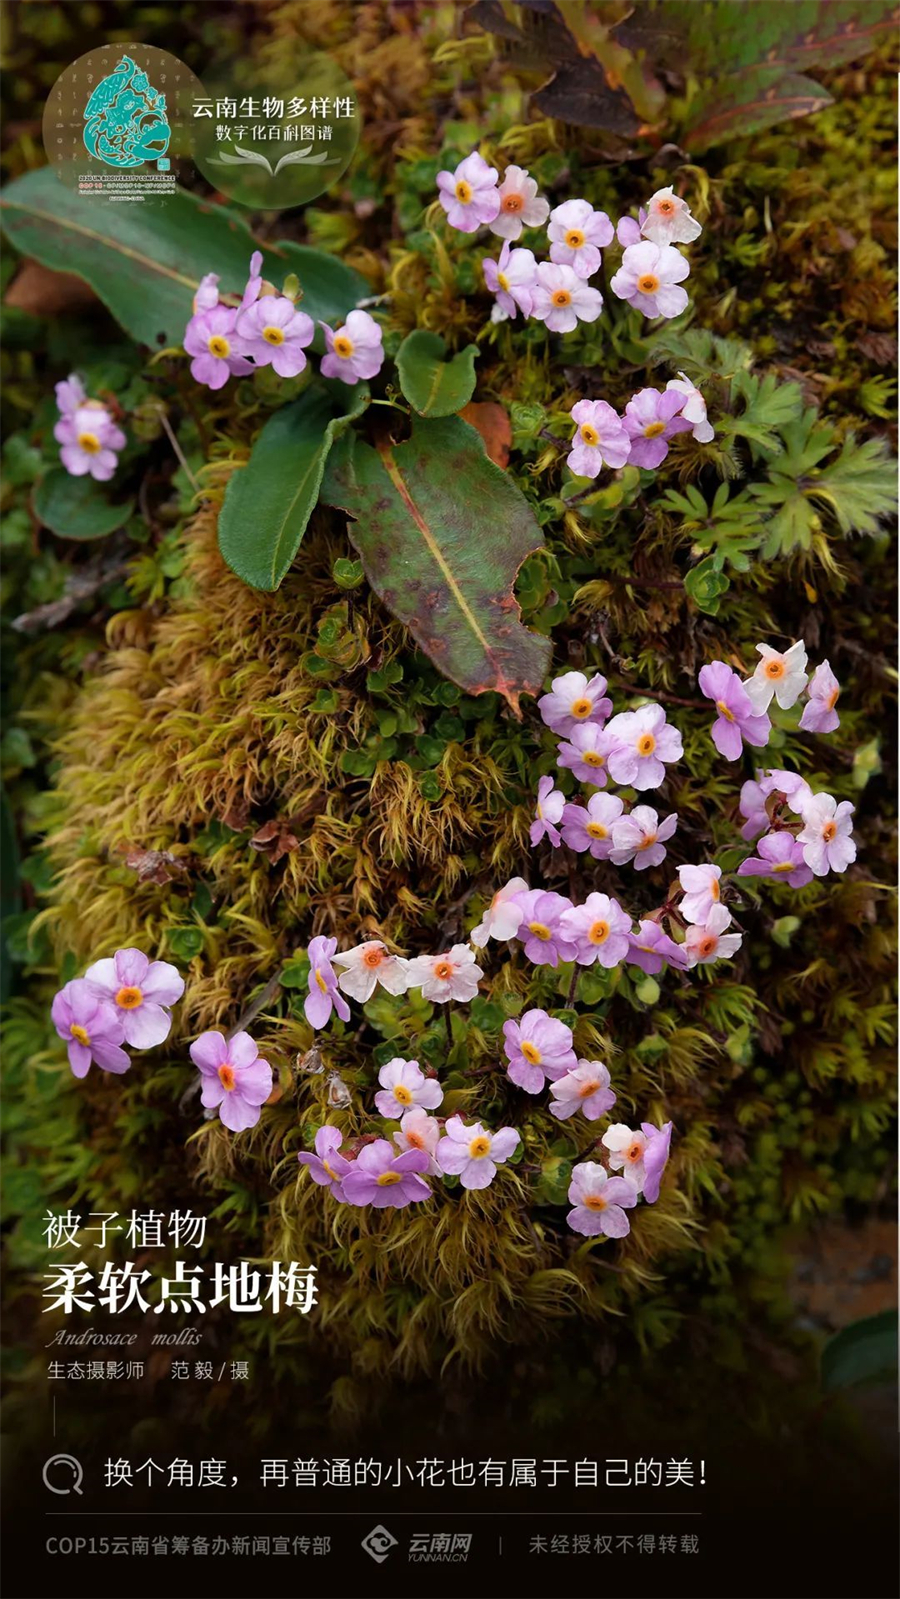 【云南生物多样性数字化百科图谱】柔软点地梅:换个角度,再普通的小花